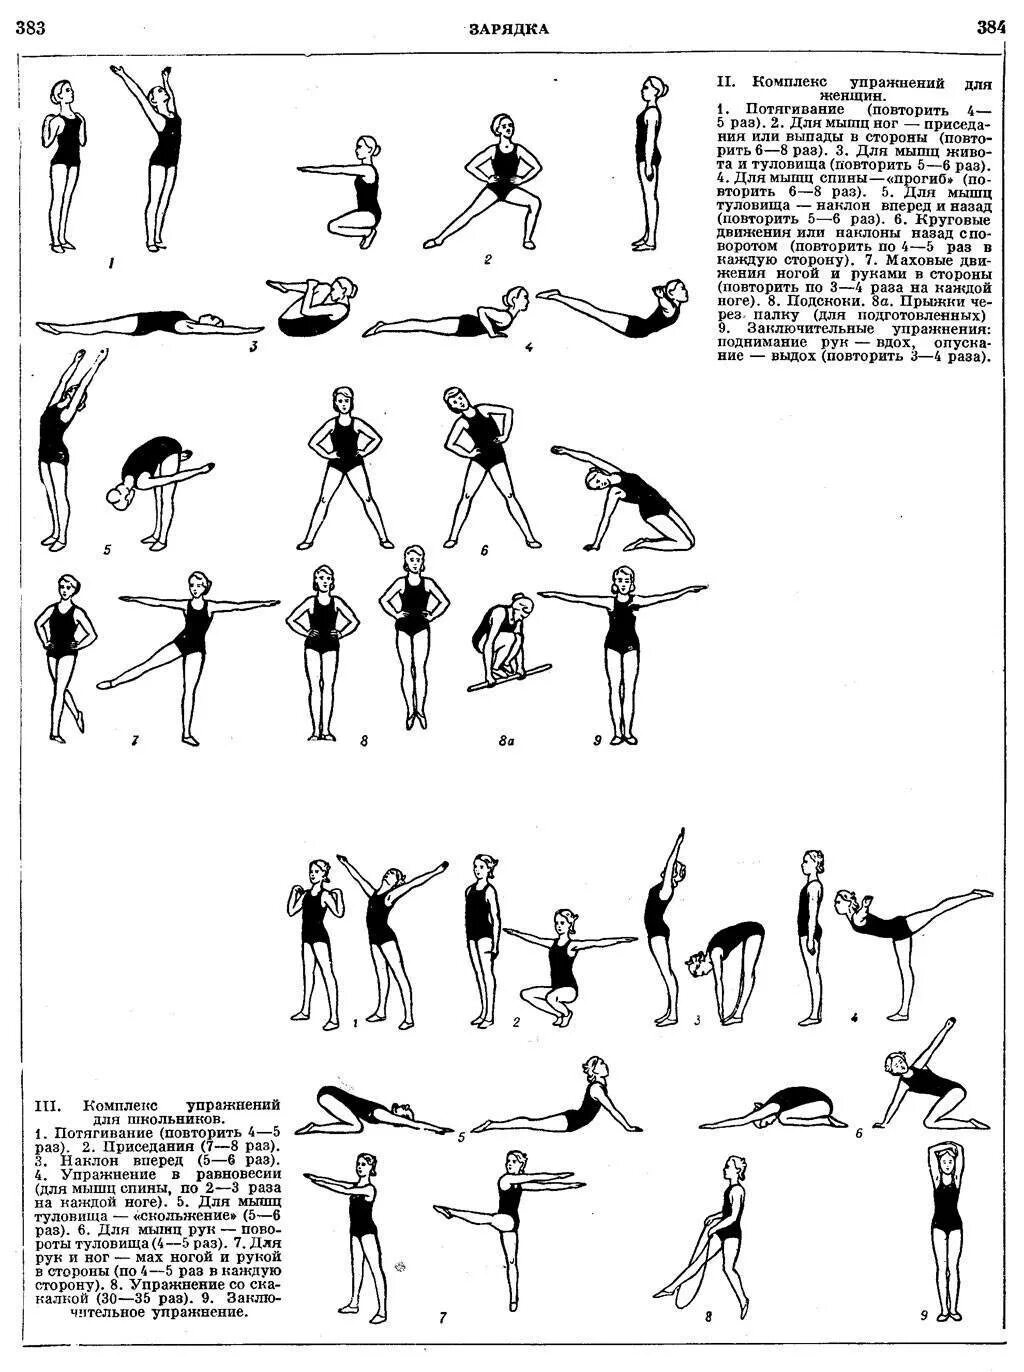 Насколько зарядка. Комплекс упражнений утренней гимнастики для женщин. Комплекс упражнений утренней зарядки таблица. Комплекс упражнений для утренней зарядки для женщин. Утренняя гимнастика СССР комплекс упражнений.